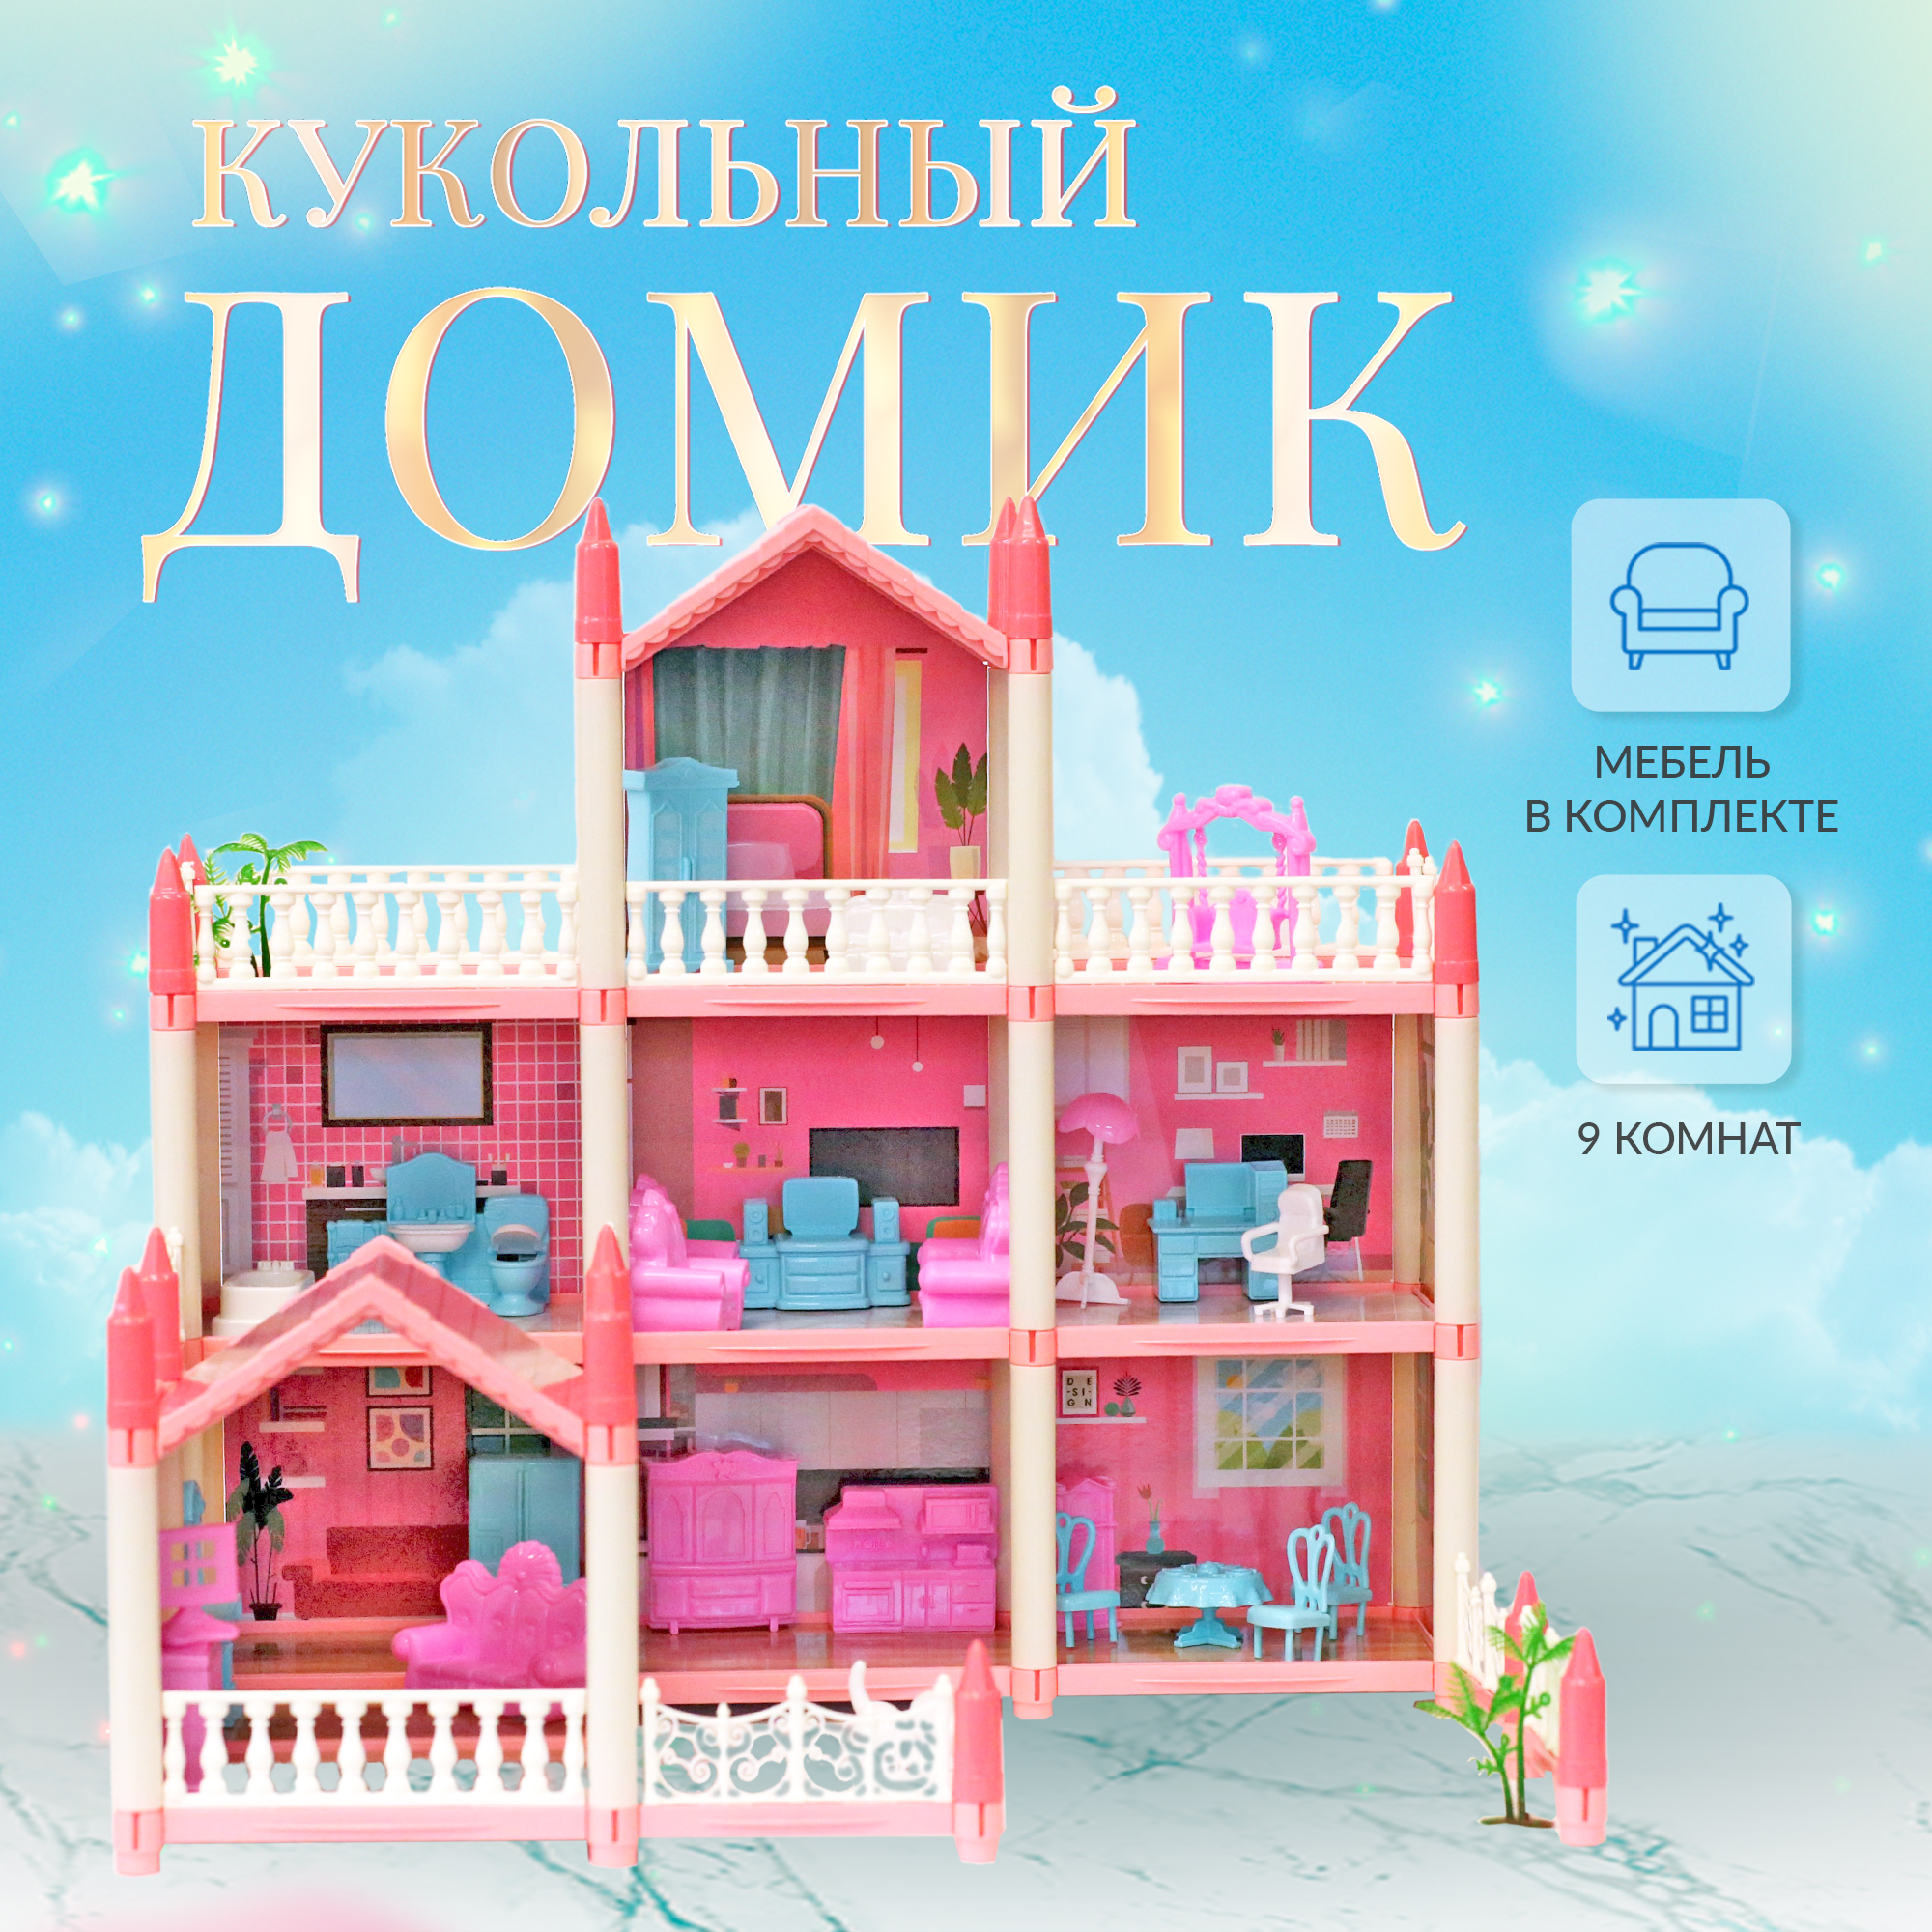 Сборный кукольный домик: 3 этажа, 8 комнат, мебель, аксессуары, кукла, питомец 11500017 игруша дом кукольный сборный с комплектом мебели